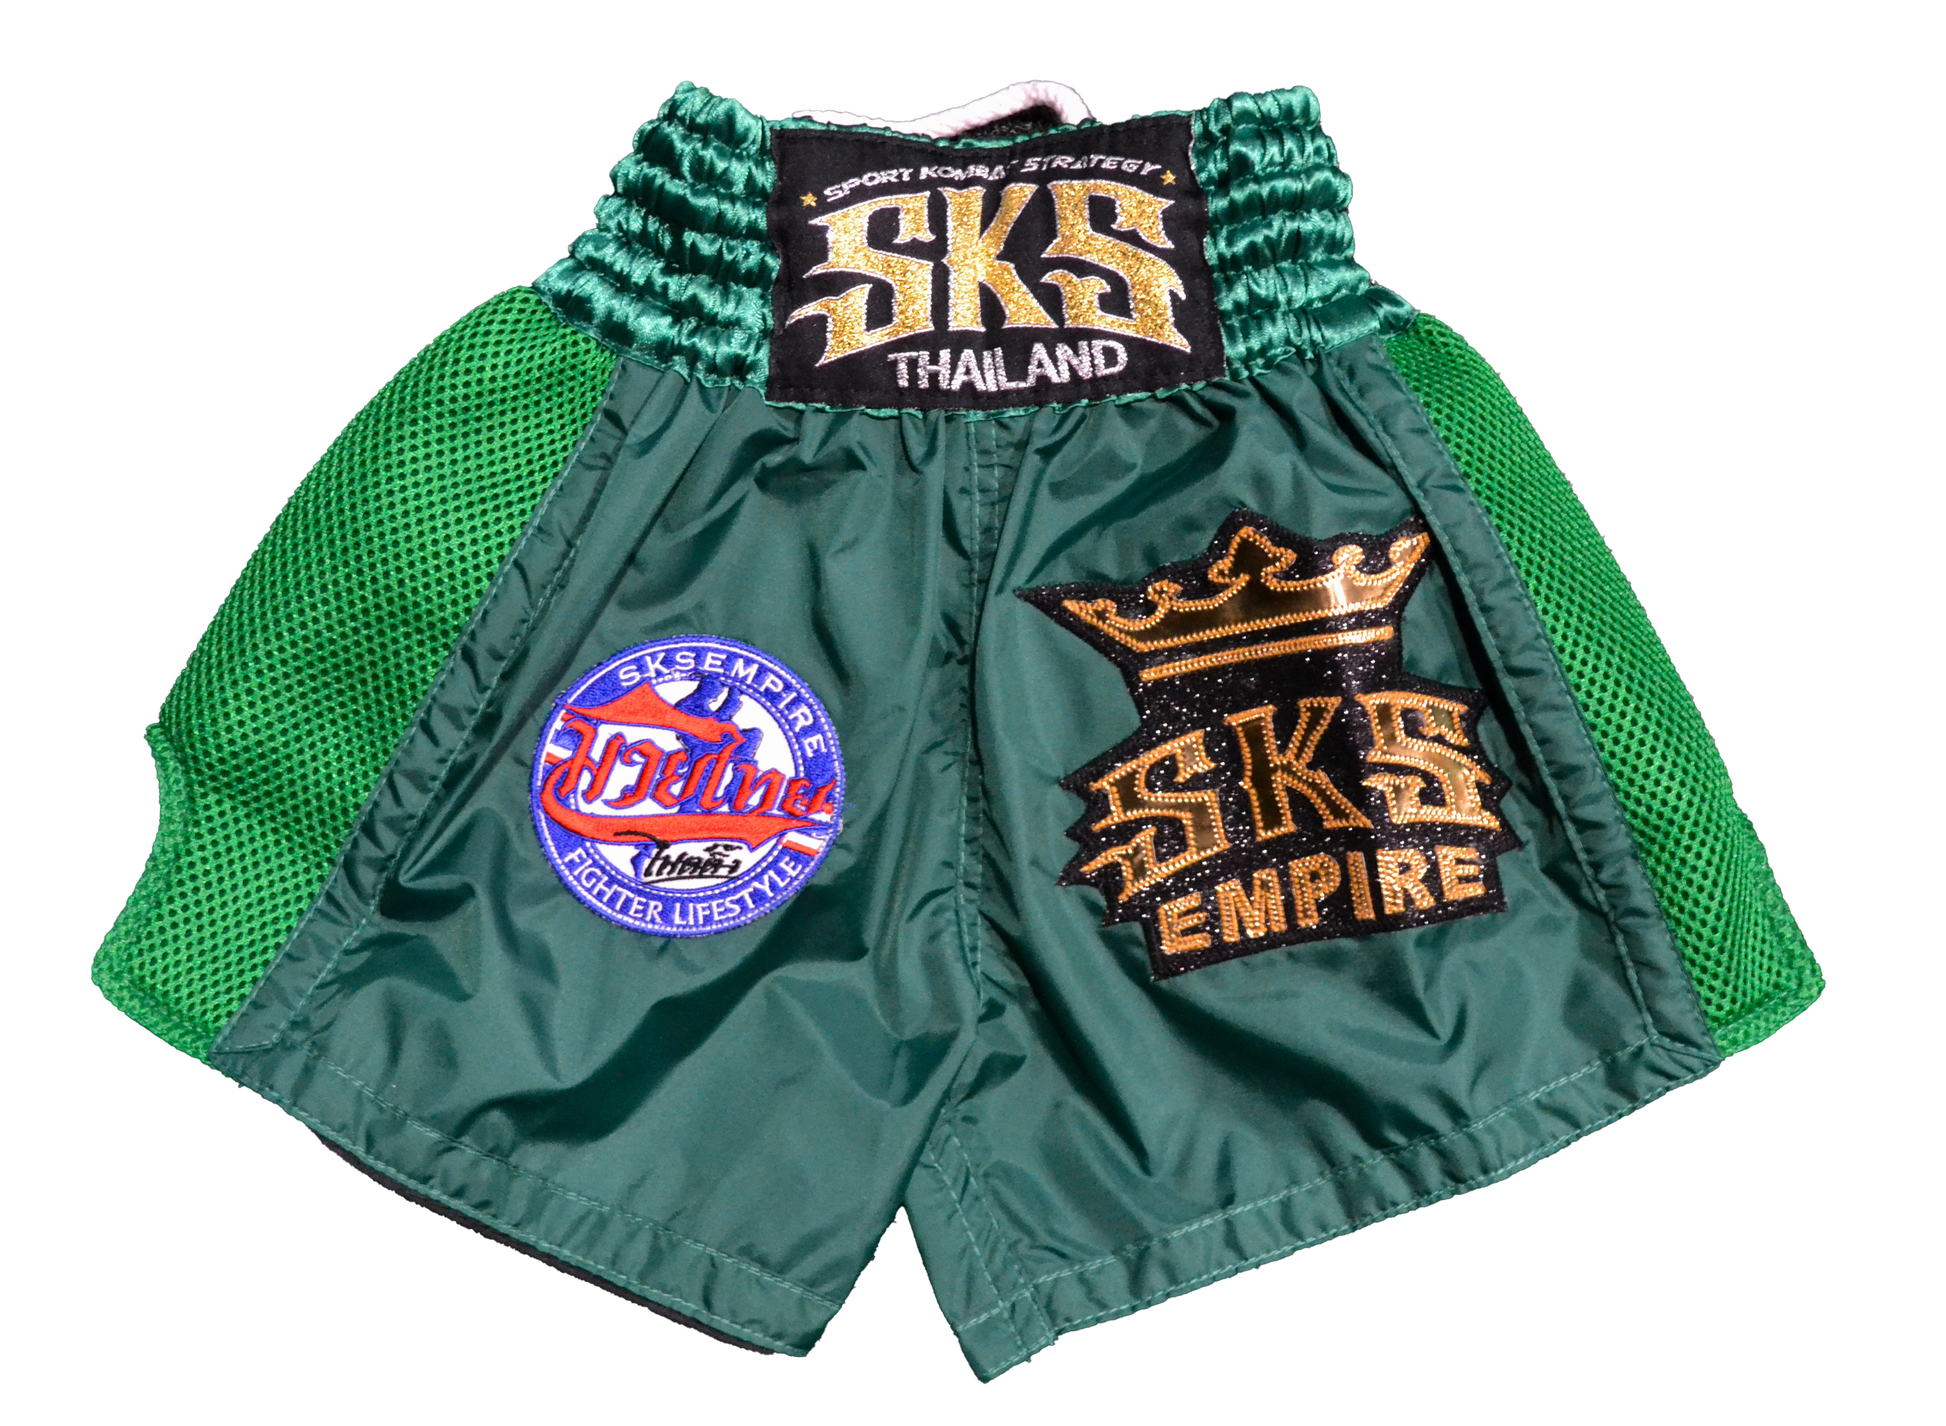 SKS Empire UK SKS King Shorts (Green) at £50